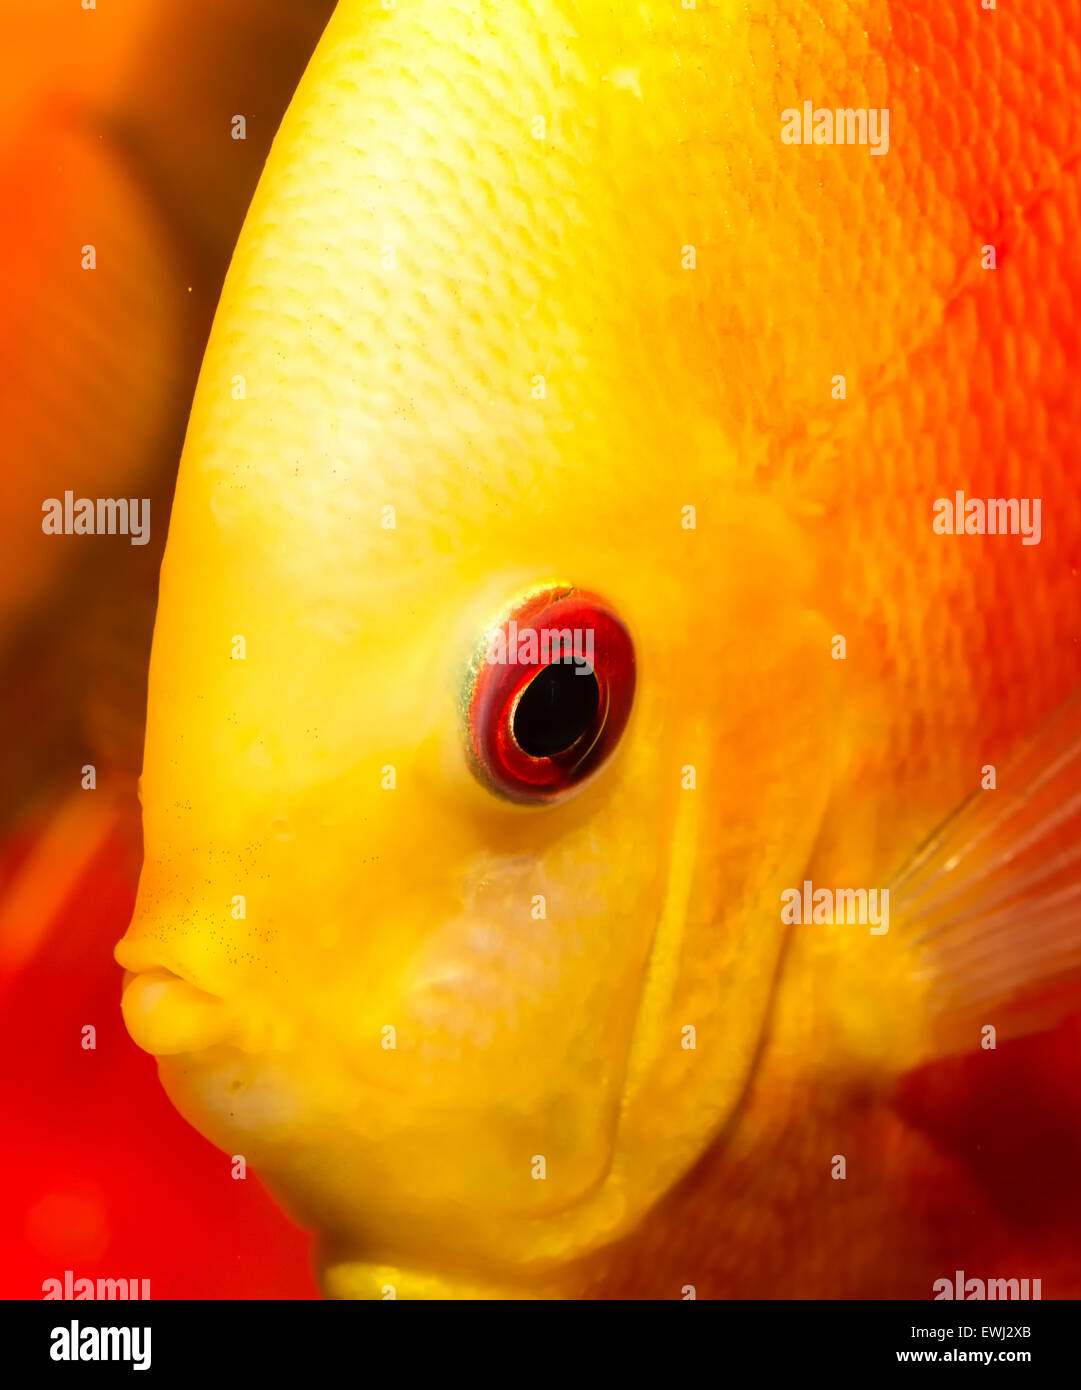 Portrait of red orange discus fish. Stock Photo